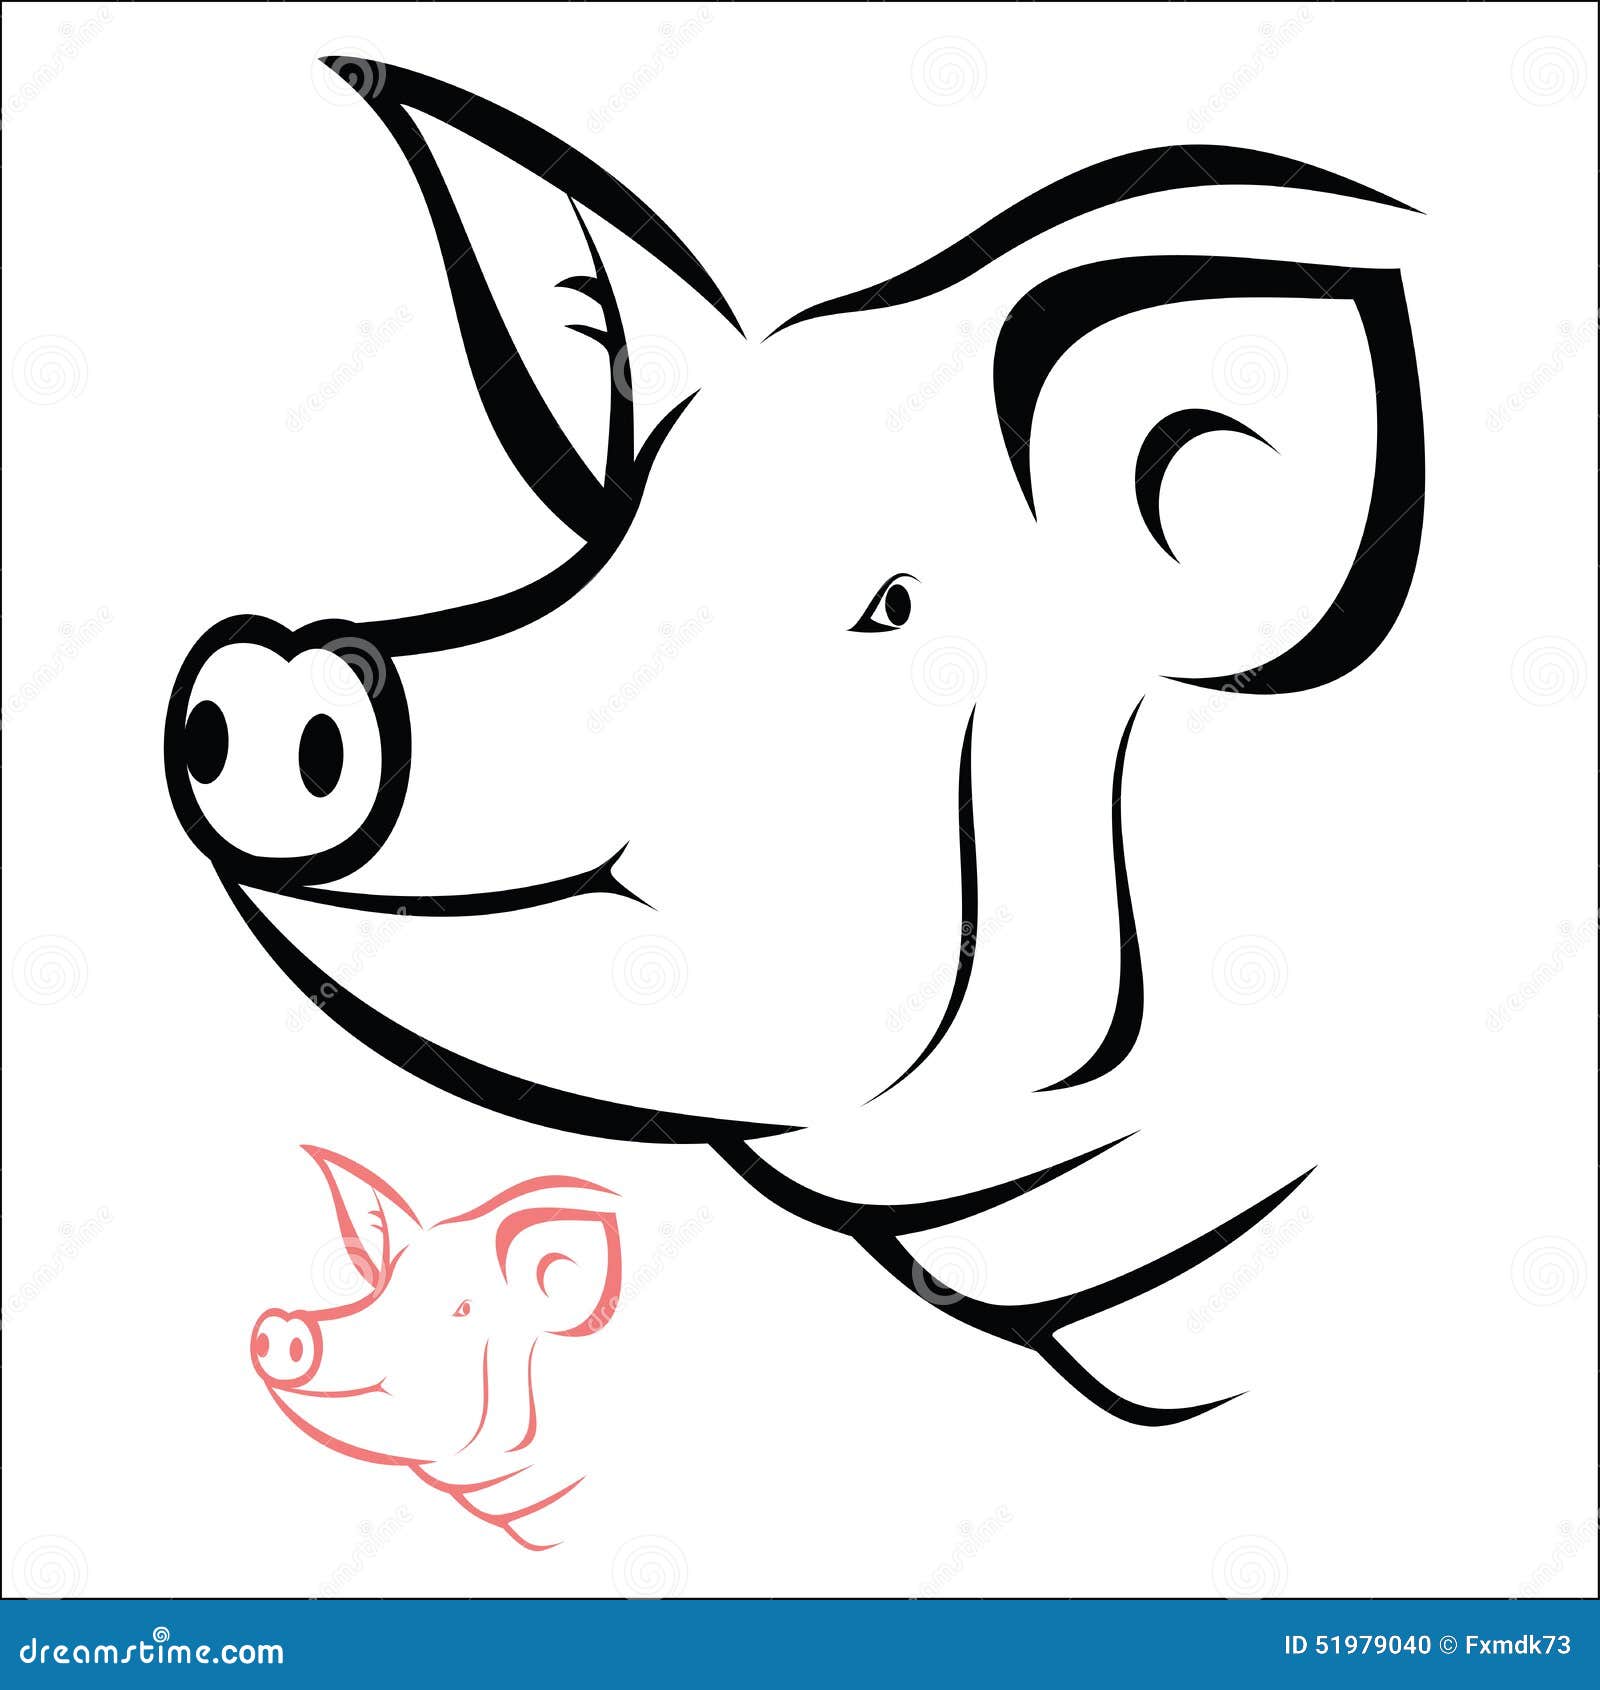 clip art pig head - photo #15